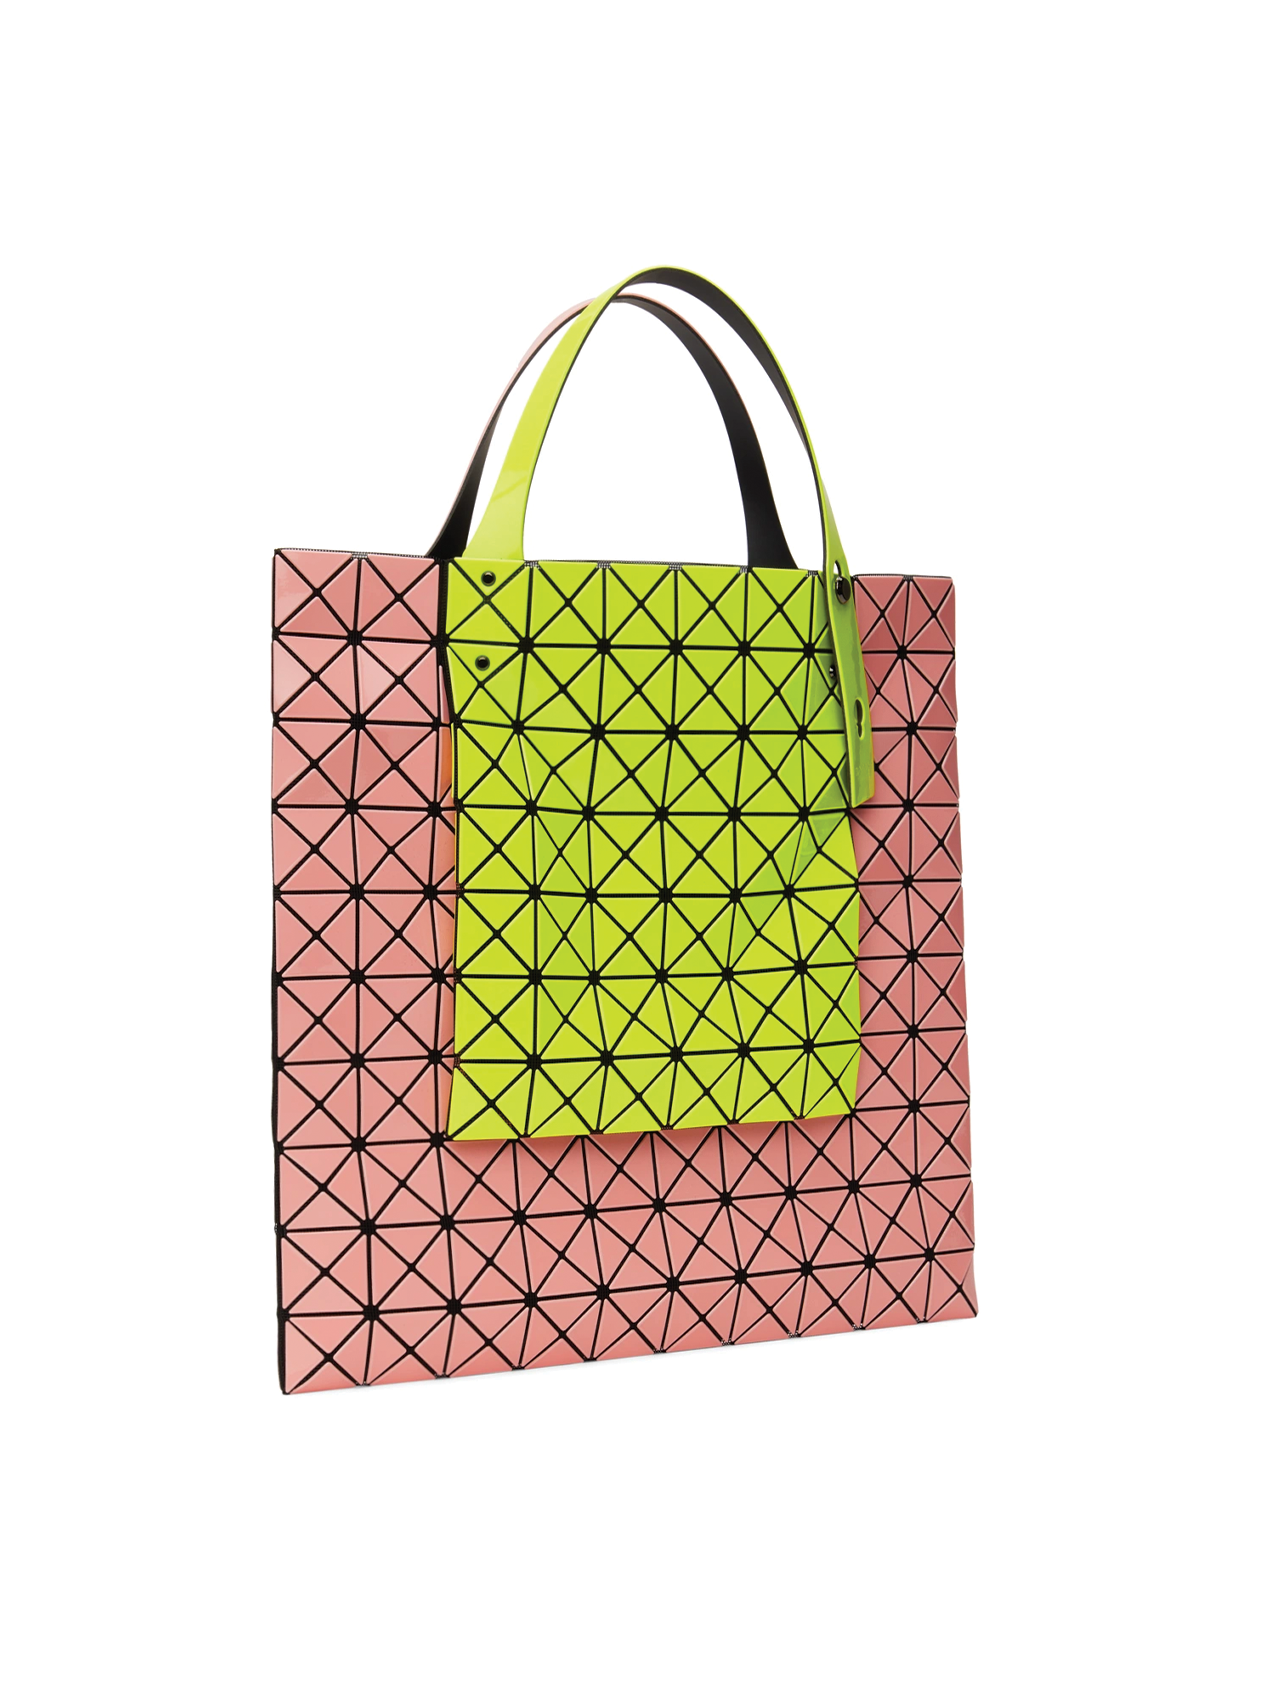 Bao Bao Issey Miyake  Prism Kangaroo Tote Bag in Yellow & Coral Pink –  Henrik Vibskov Boutique